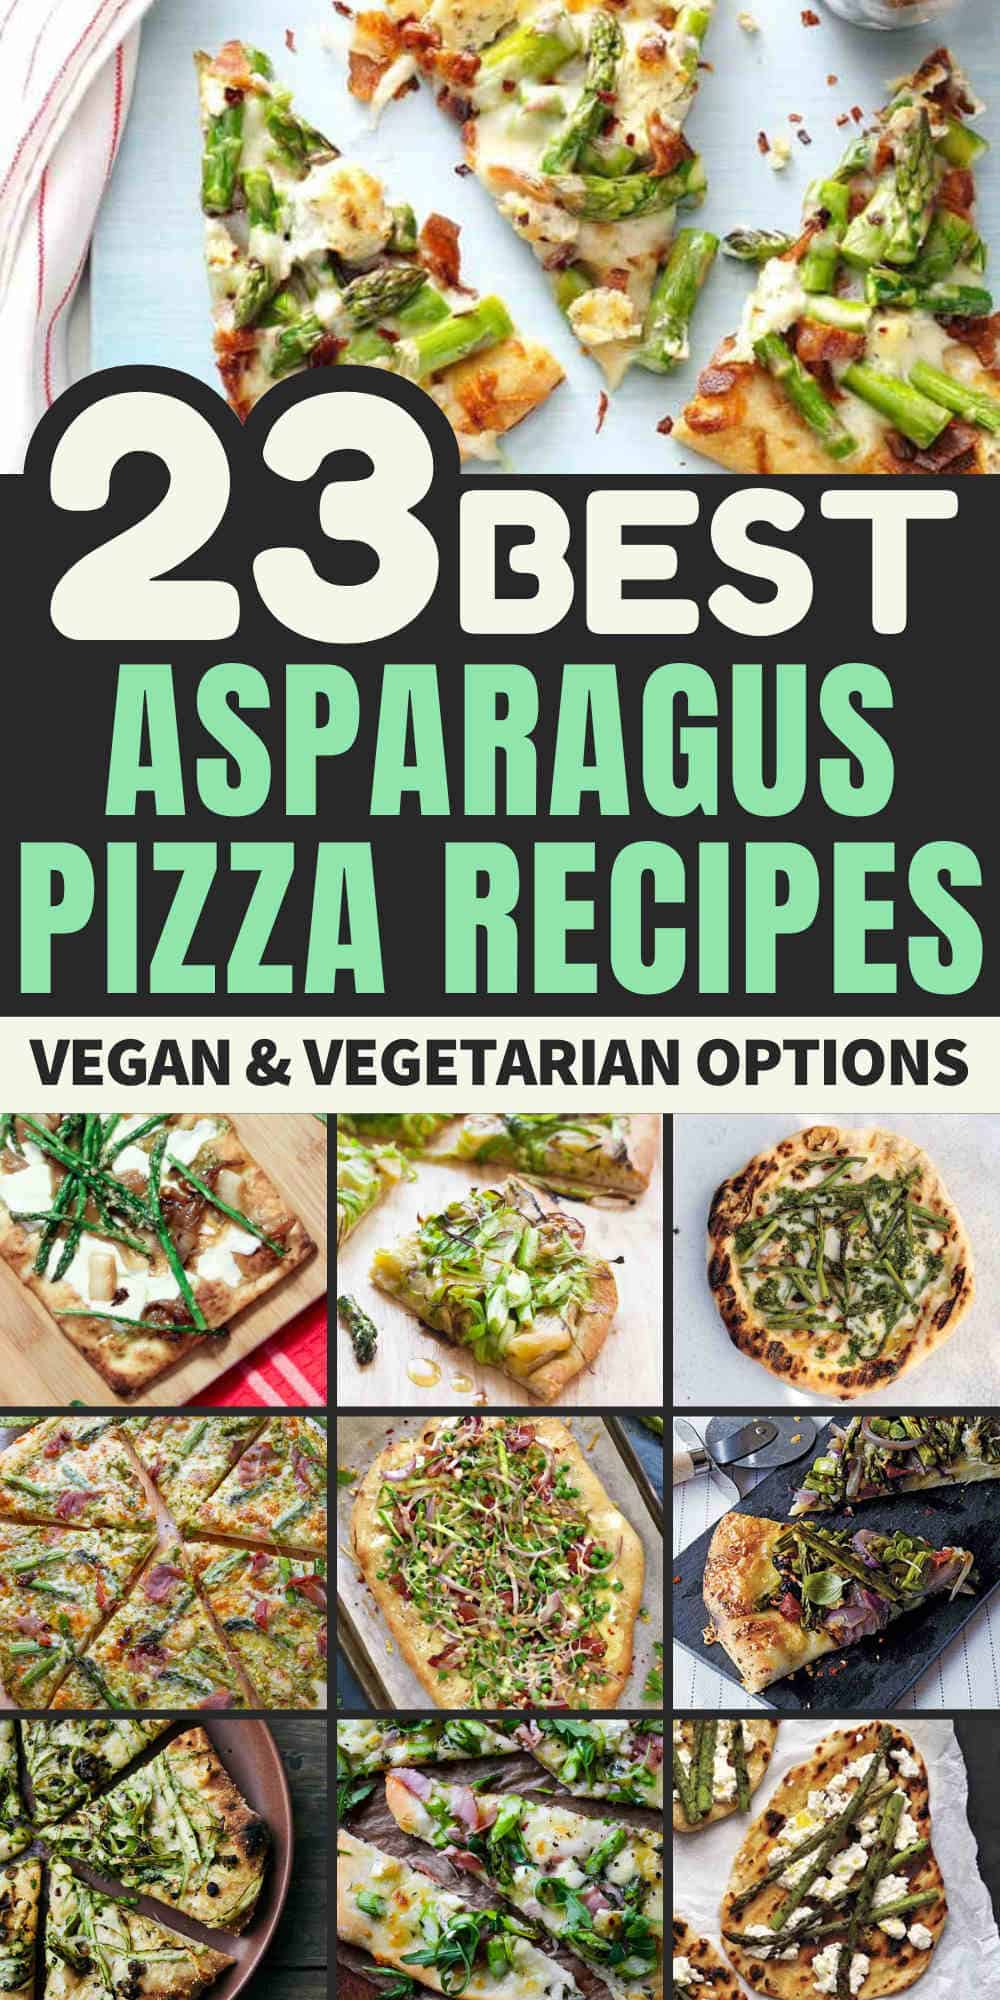 asparagus pizza recipe